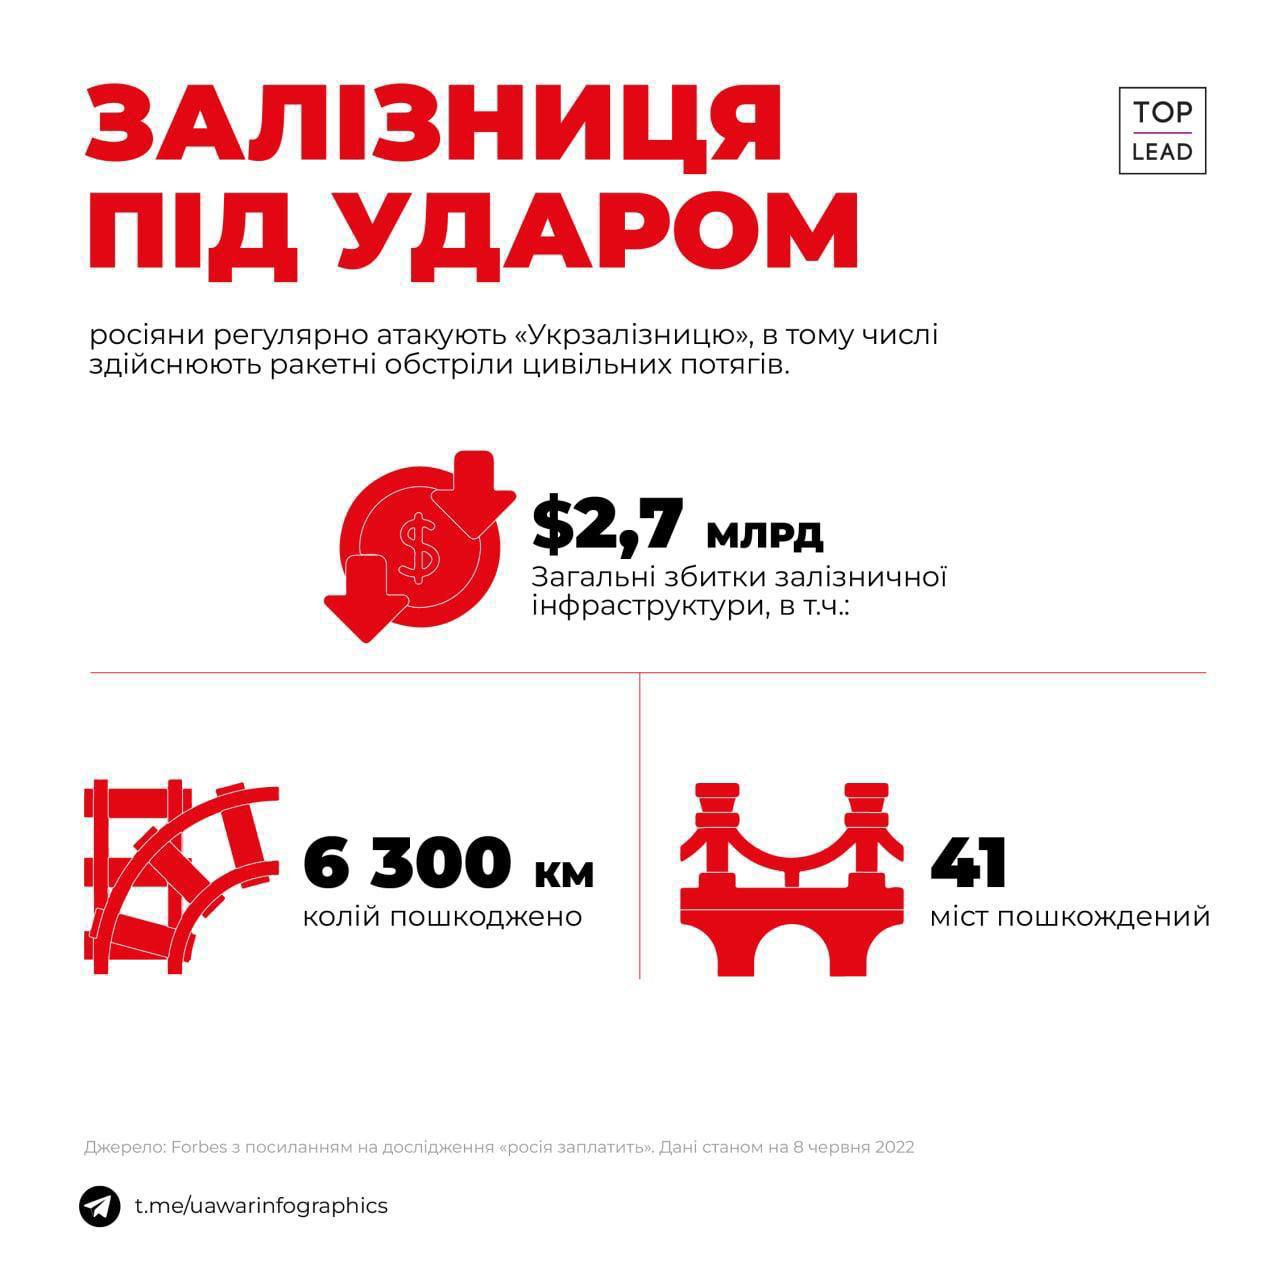 Инфографика повреждений "Укрзализныци"